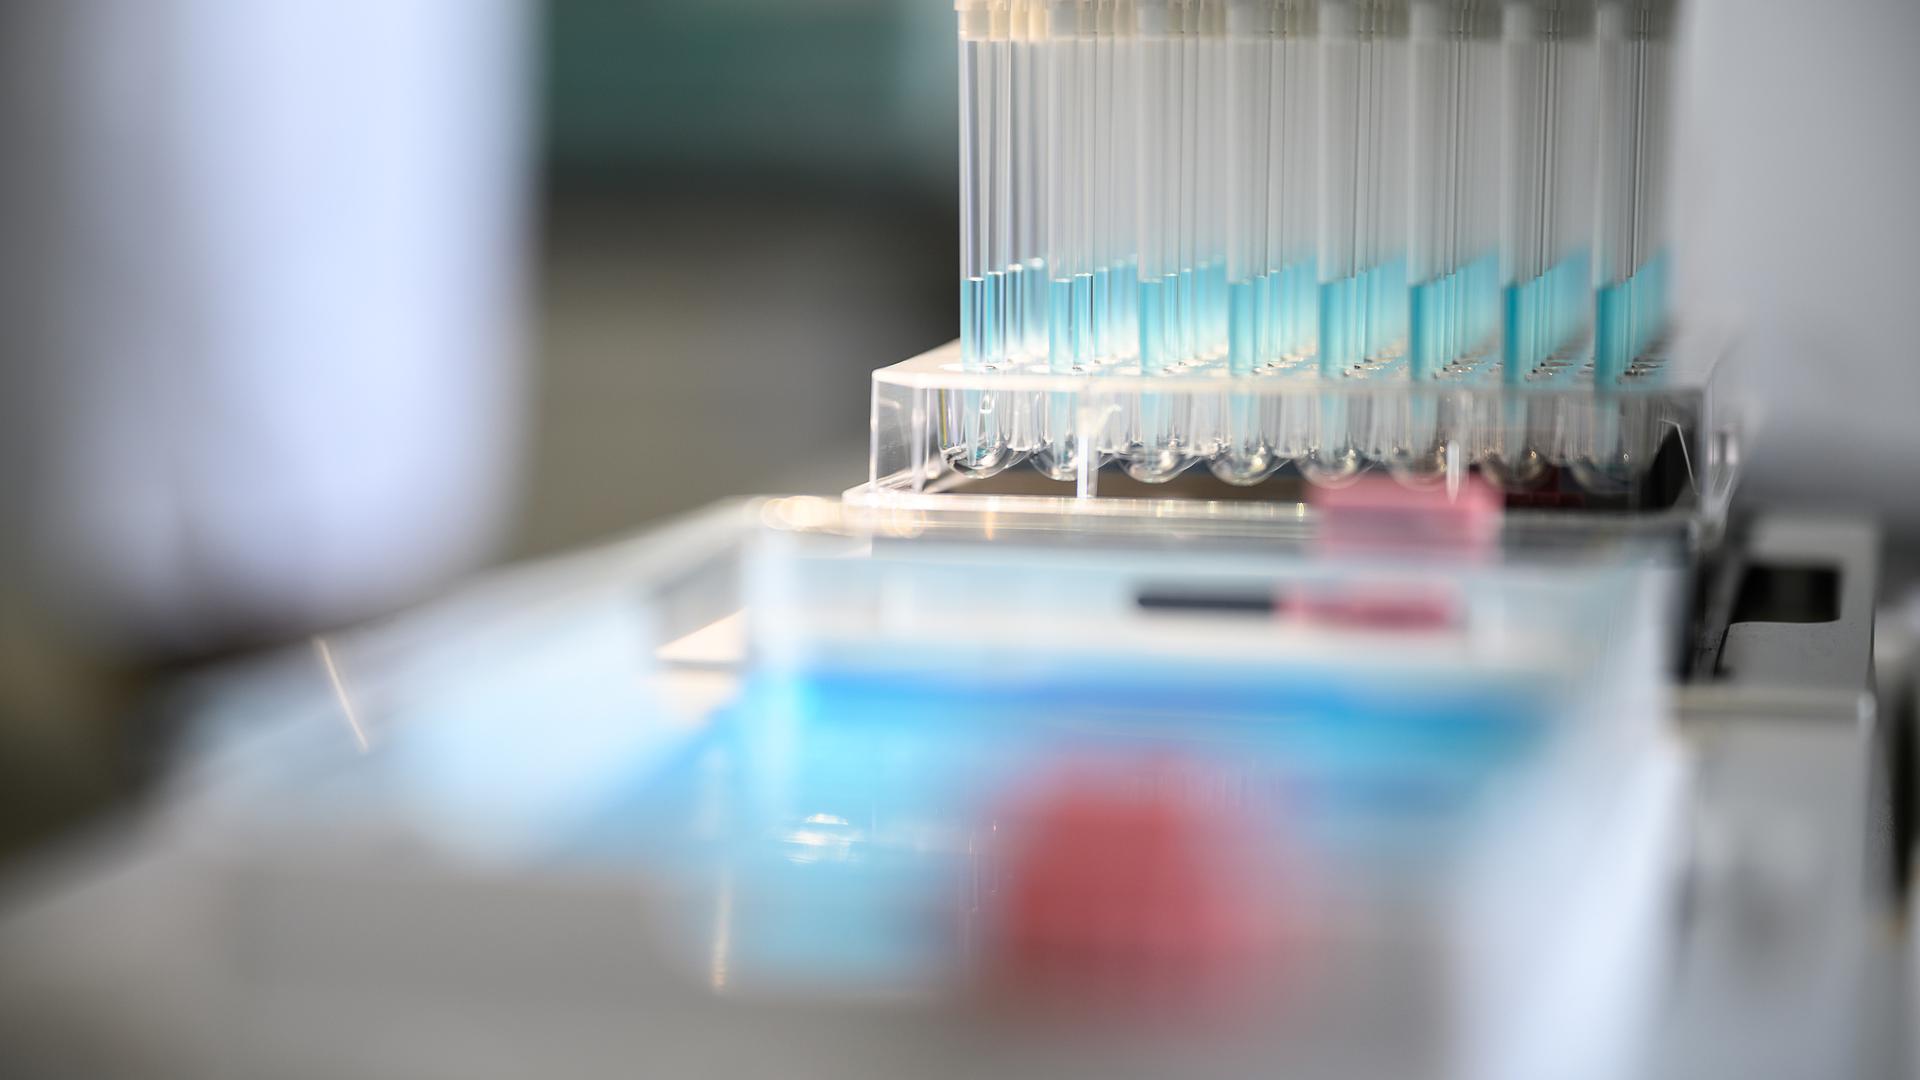 Le Laboratoire national de santé va améliorer son outil de séquençage pour analyser plus d'échantillons, plus vite.